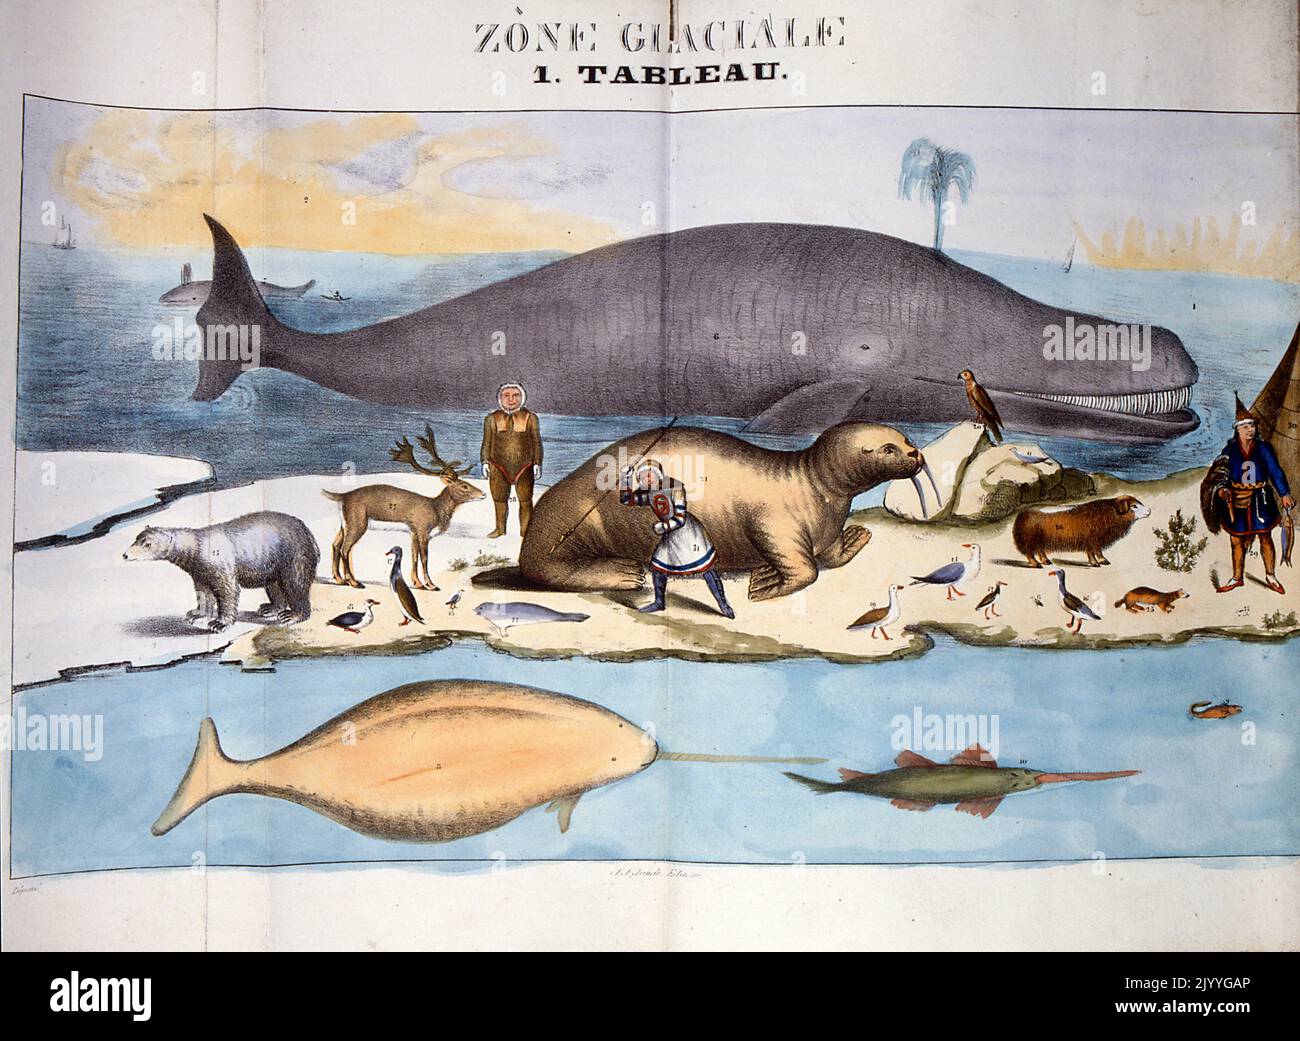 Farbige Illustration mit dem Titel „Frozen Zone“, die Tiere und Menschen in der Arktis zeigt. Stockfoto